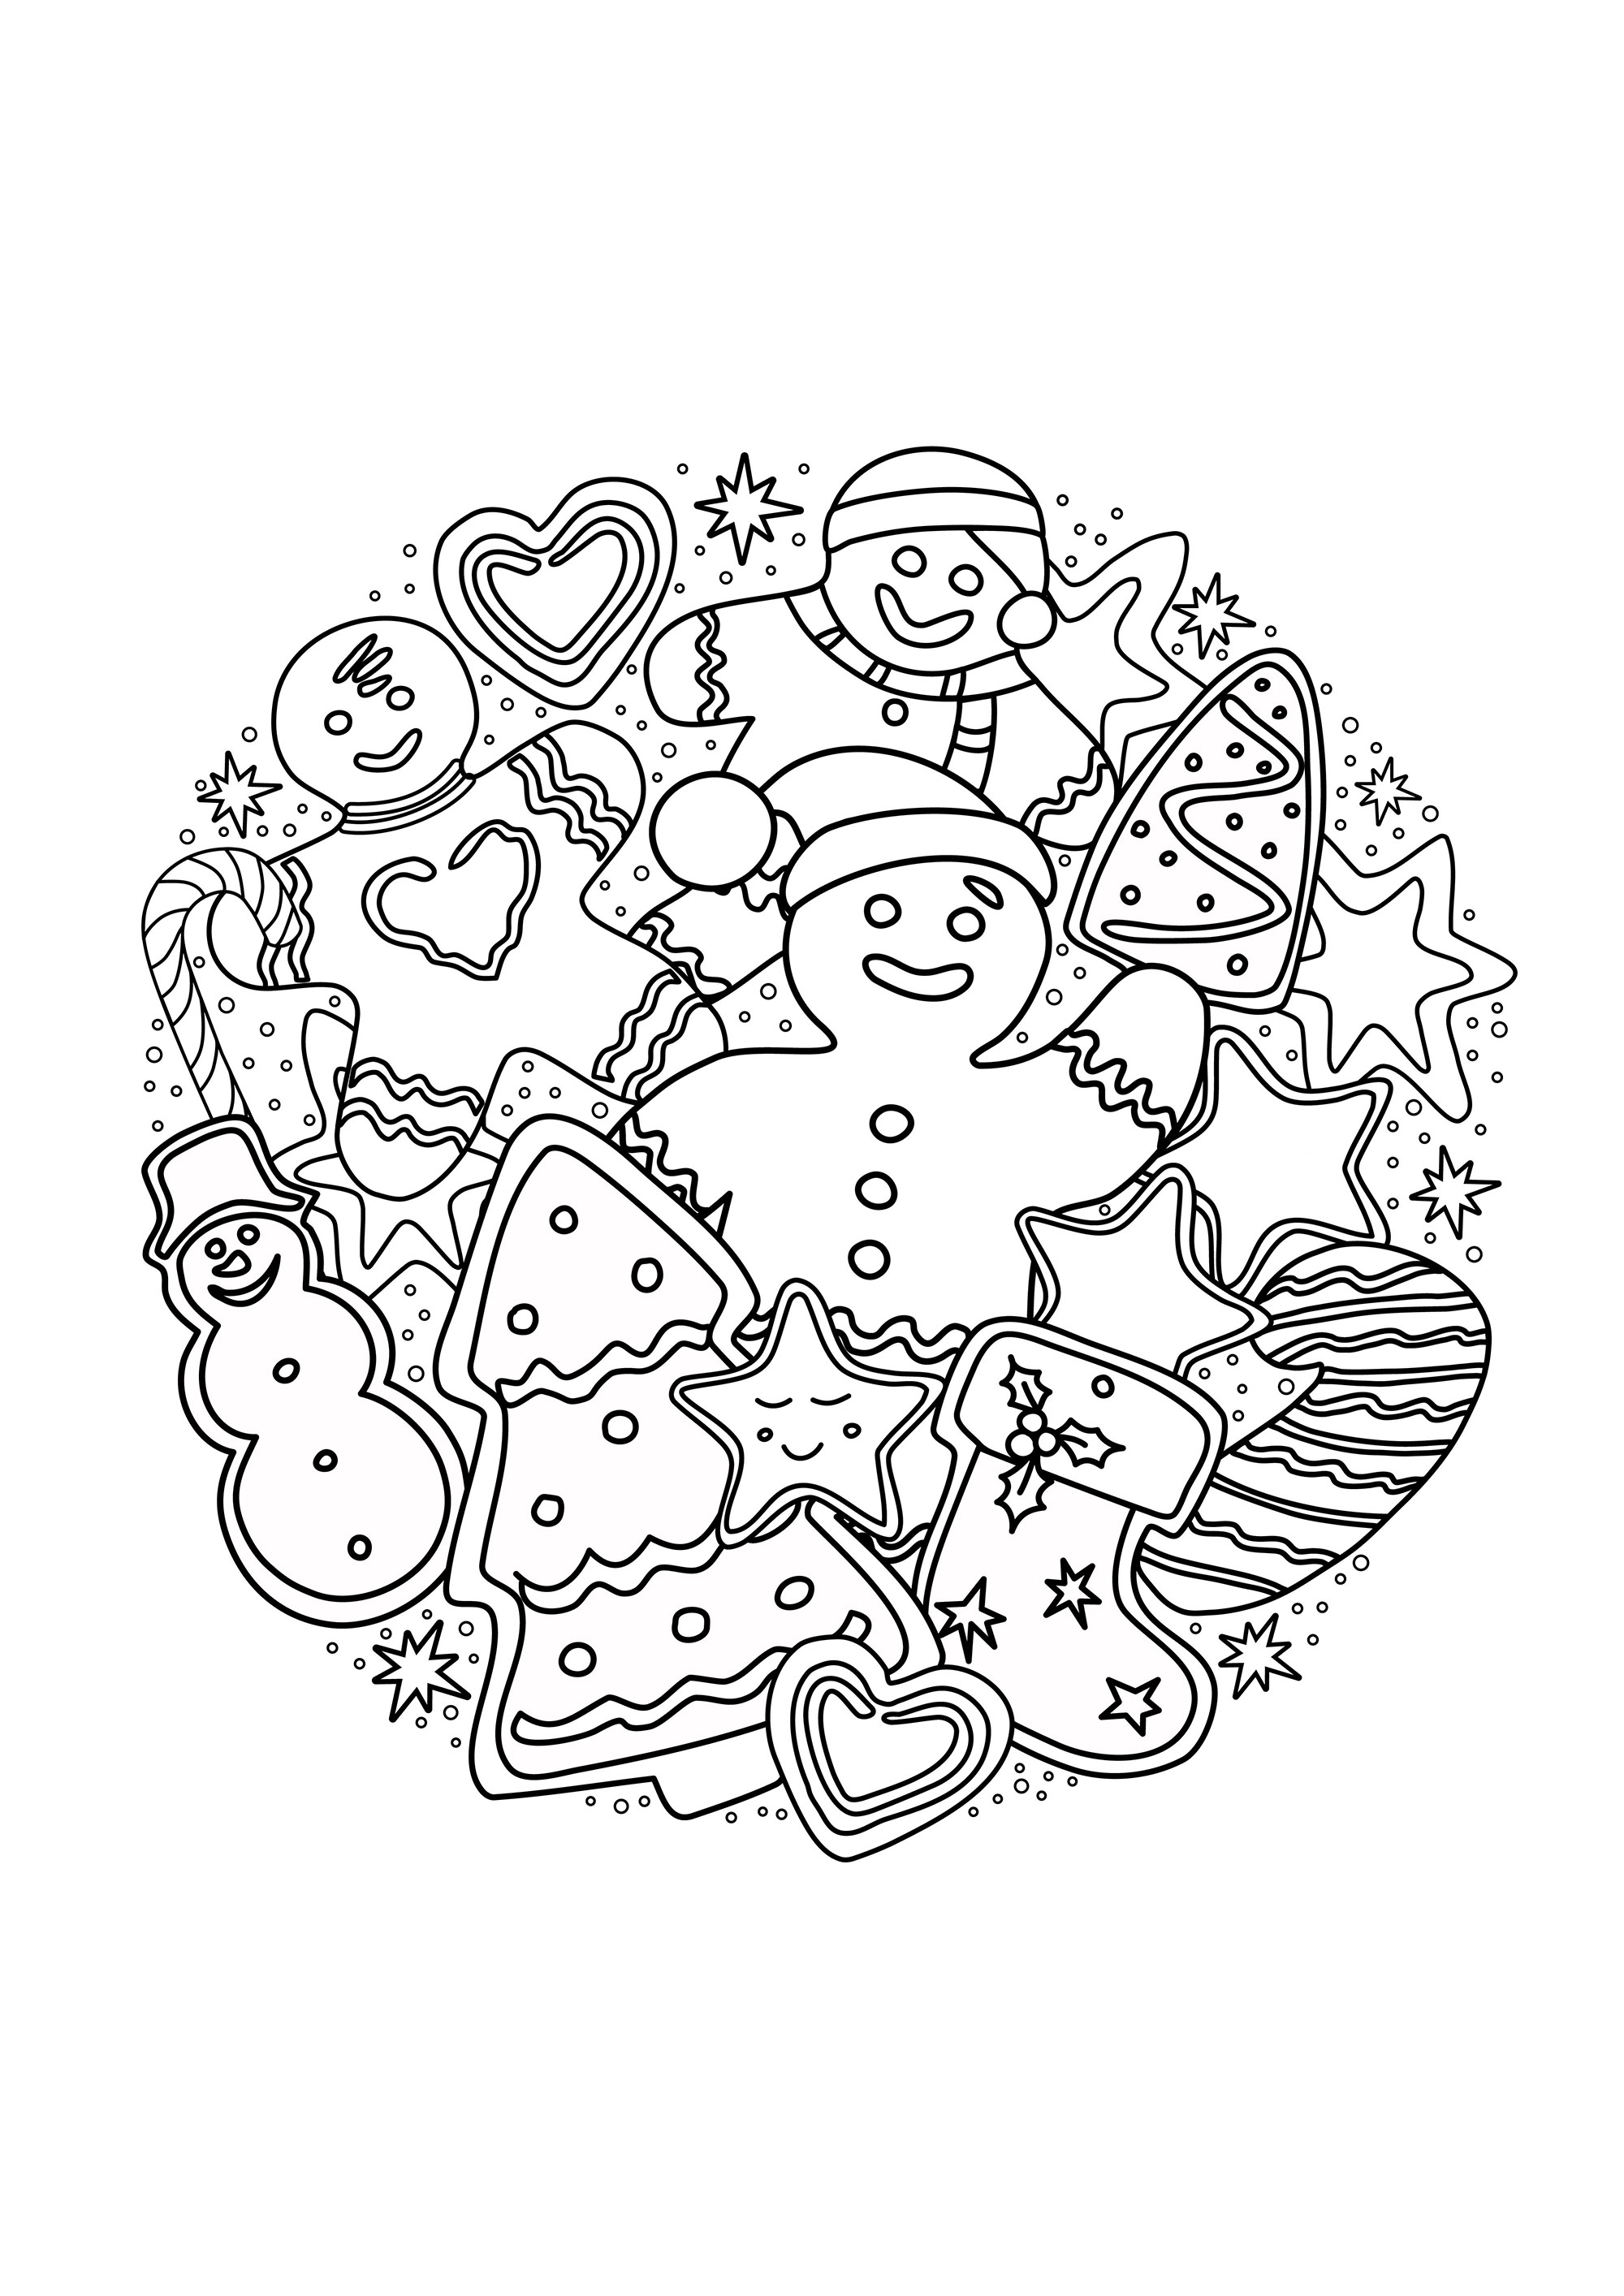 Pão de mel e bolos que representam árvores de Natal, bonecos de neve, guloseimas e doces .., Fonte : 123rf   Artista : dovina